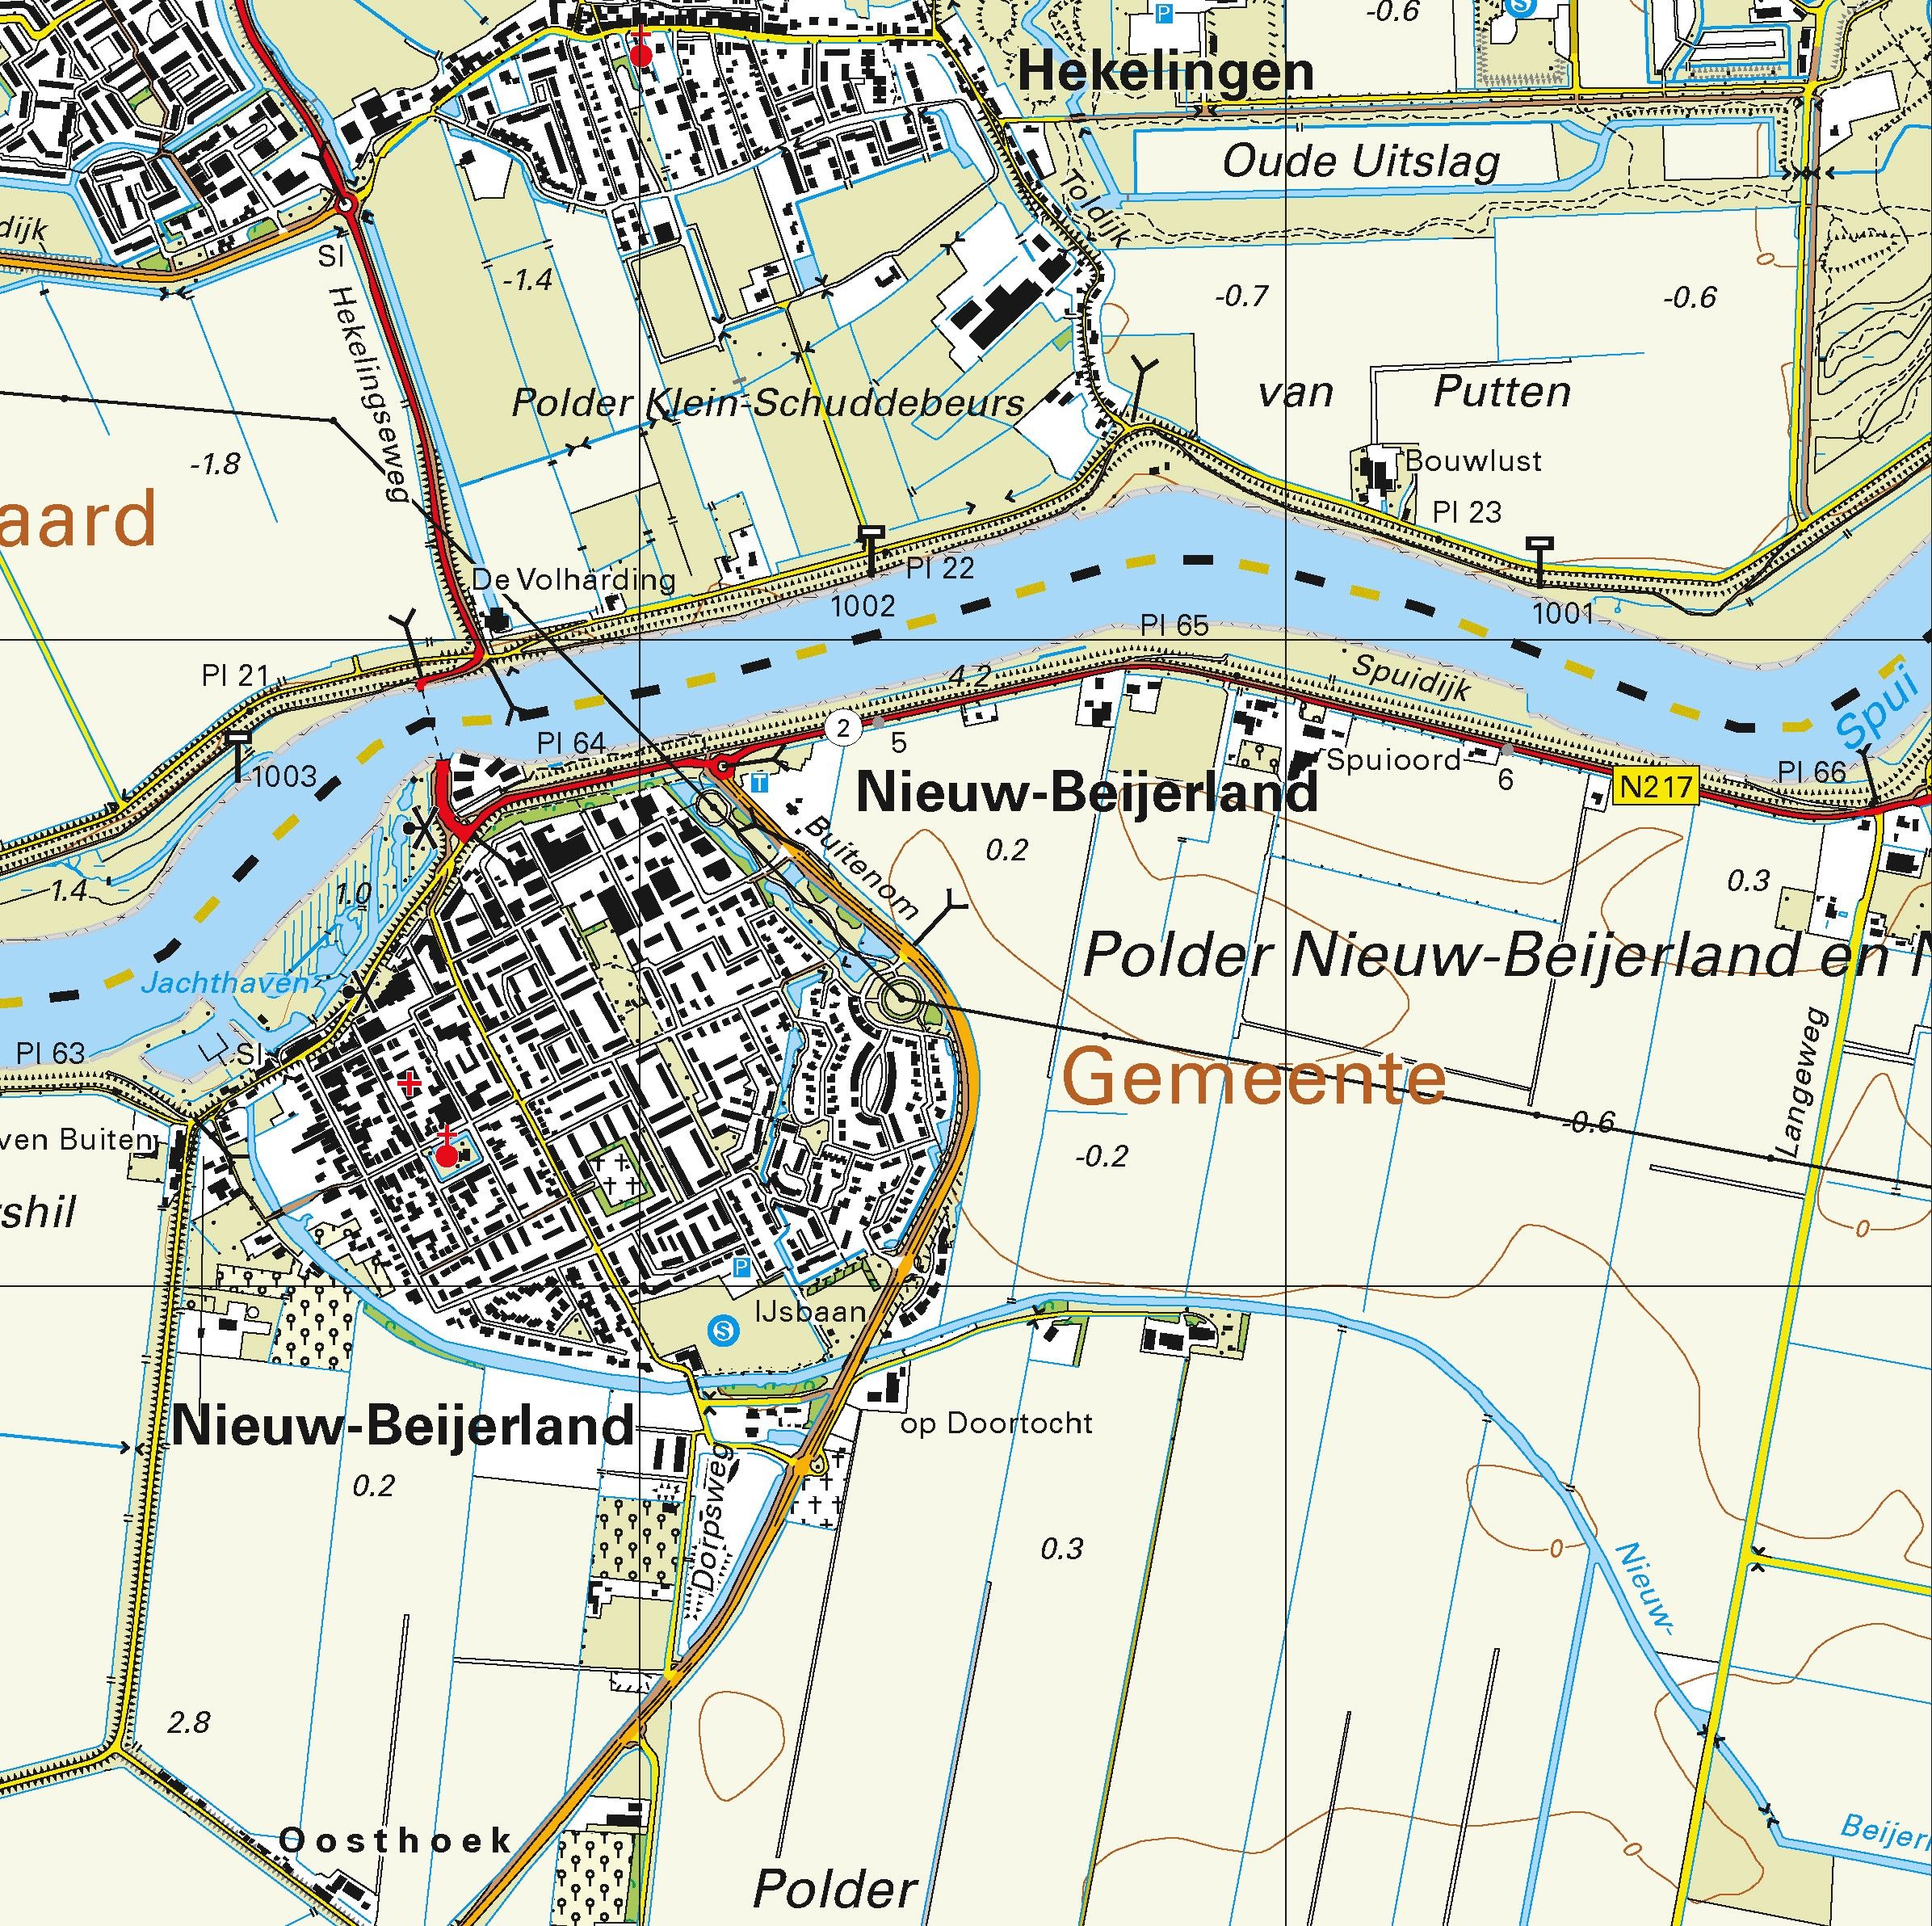 Topografische kaart schaal 1:25.000 (Rotterdam, Hoogvliet, Spijkenisse, Oud-Beijerland, Numansdorp)